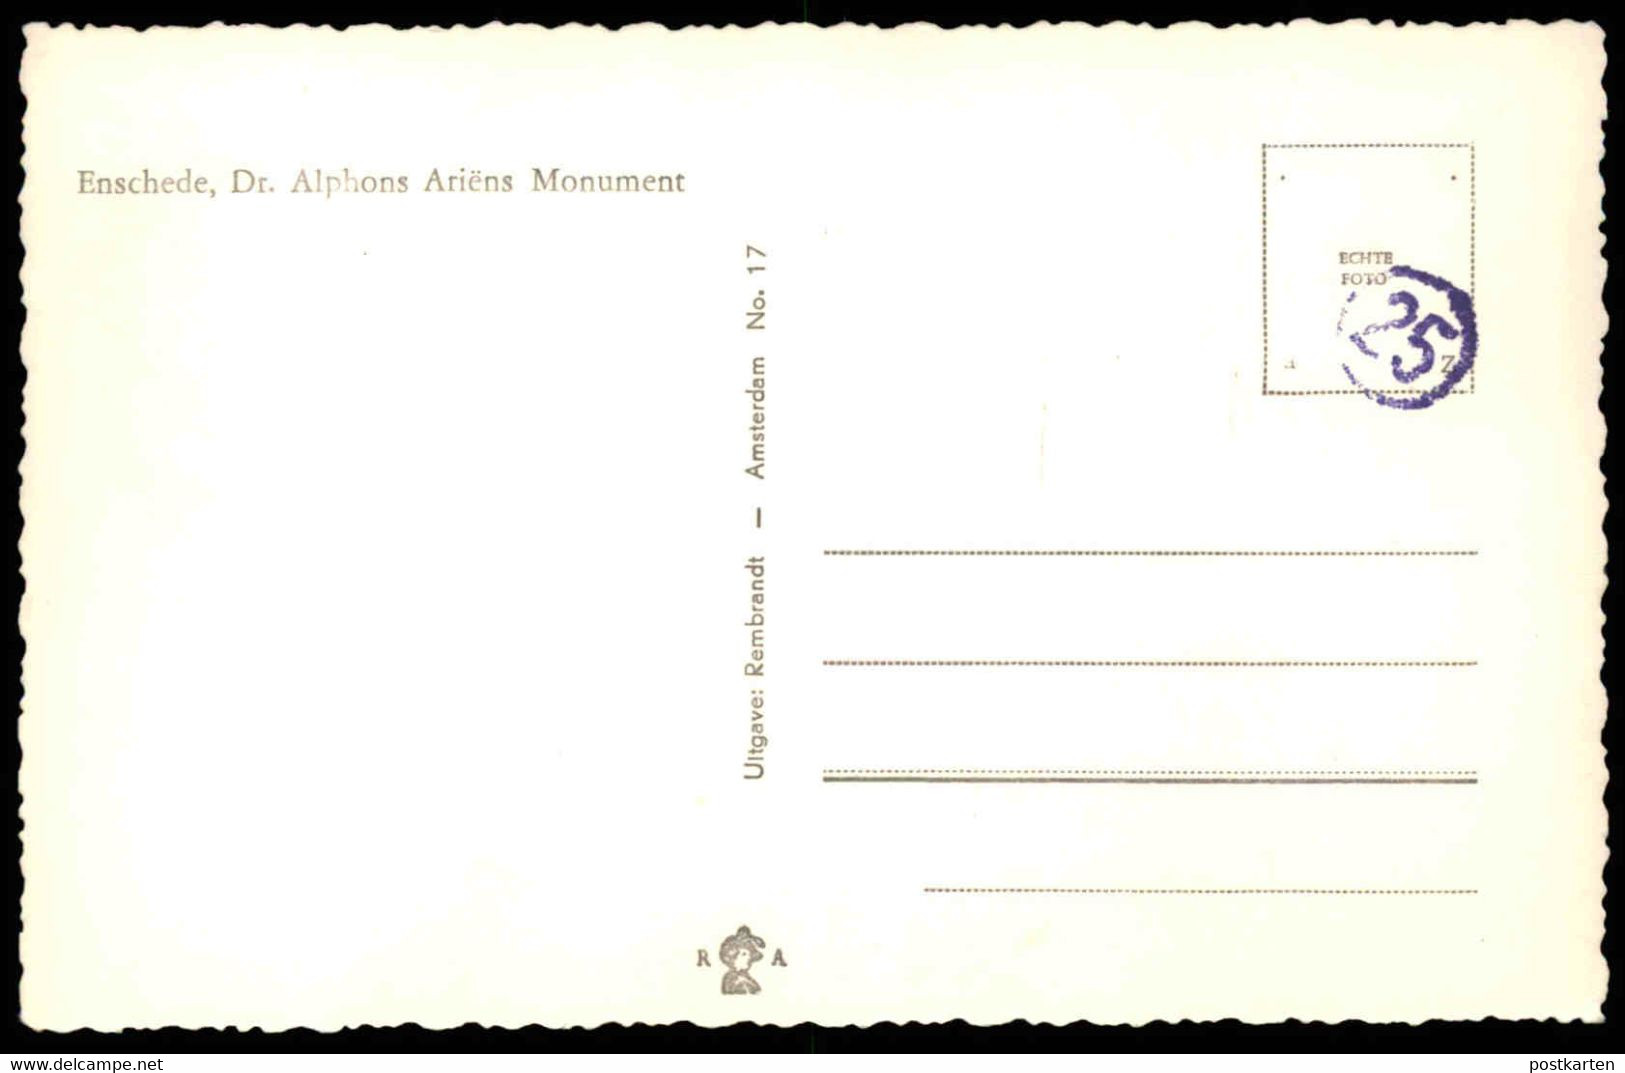 ÄLTERE POSTKARTE ENSCHEDE DR. ALPHONS ARIENS MONUMENT Nederland Netherlands Niederlande Holland Pays-Bas Cpa Postcard - Enschede